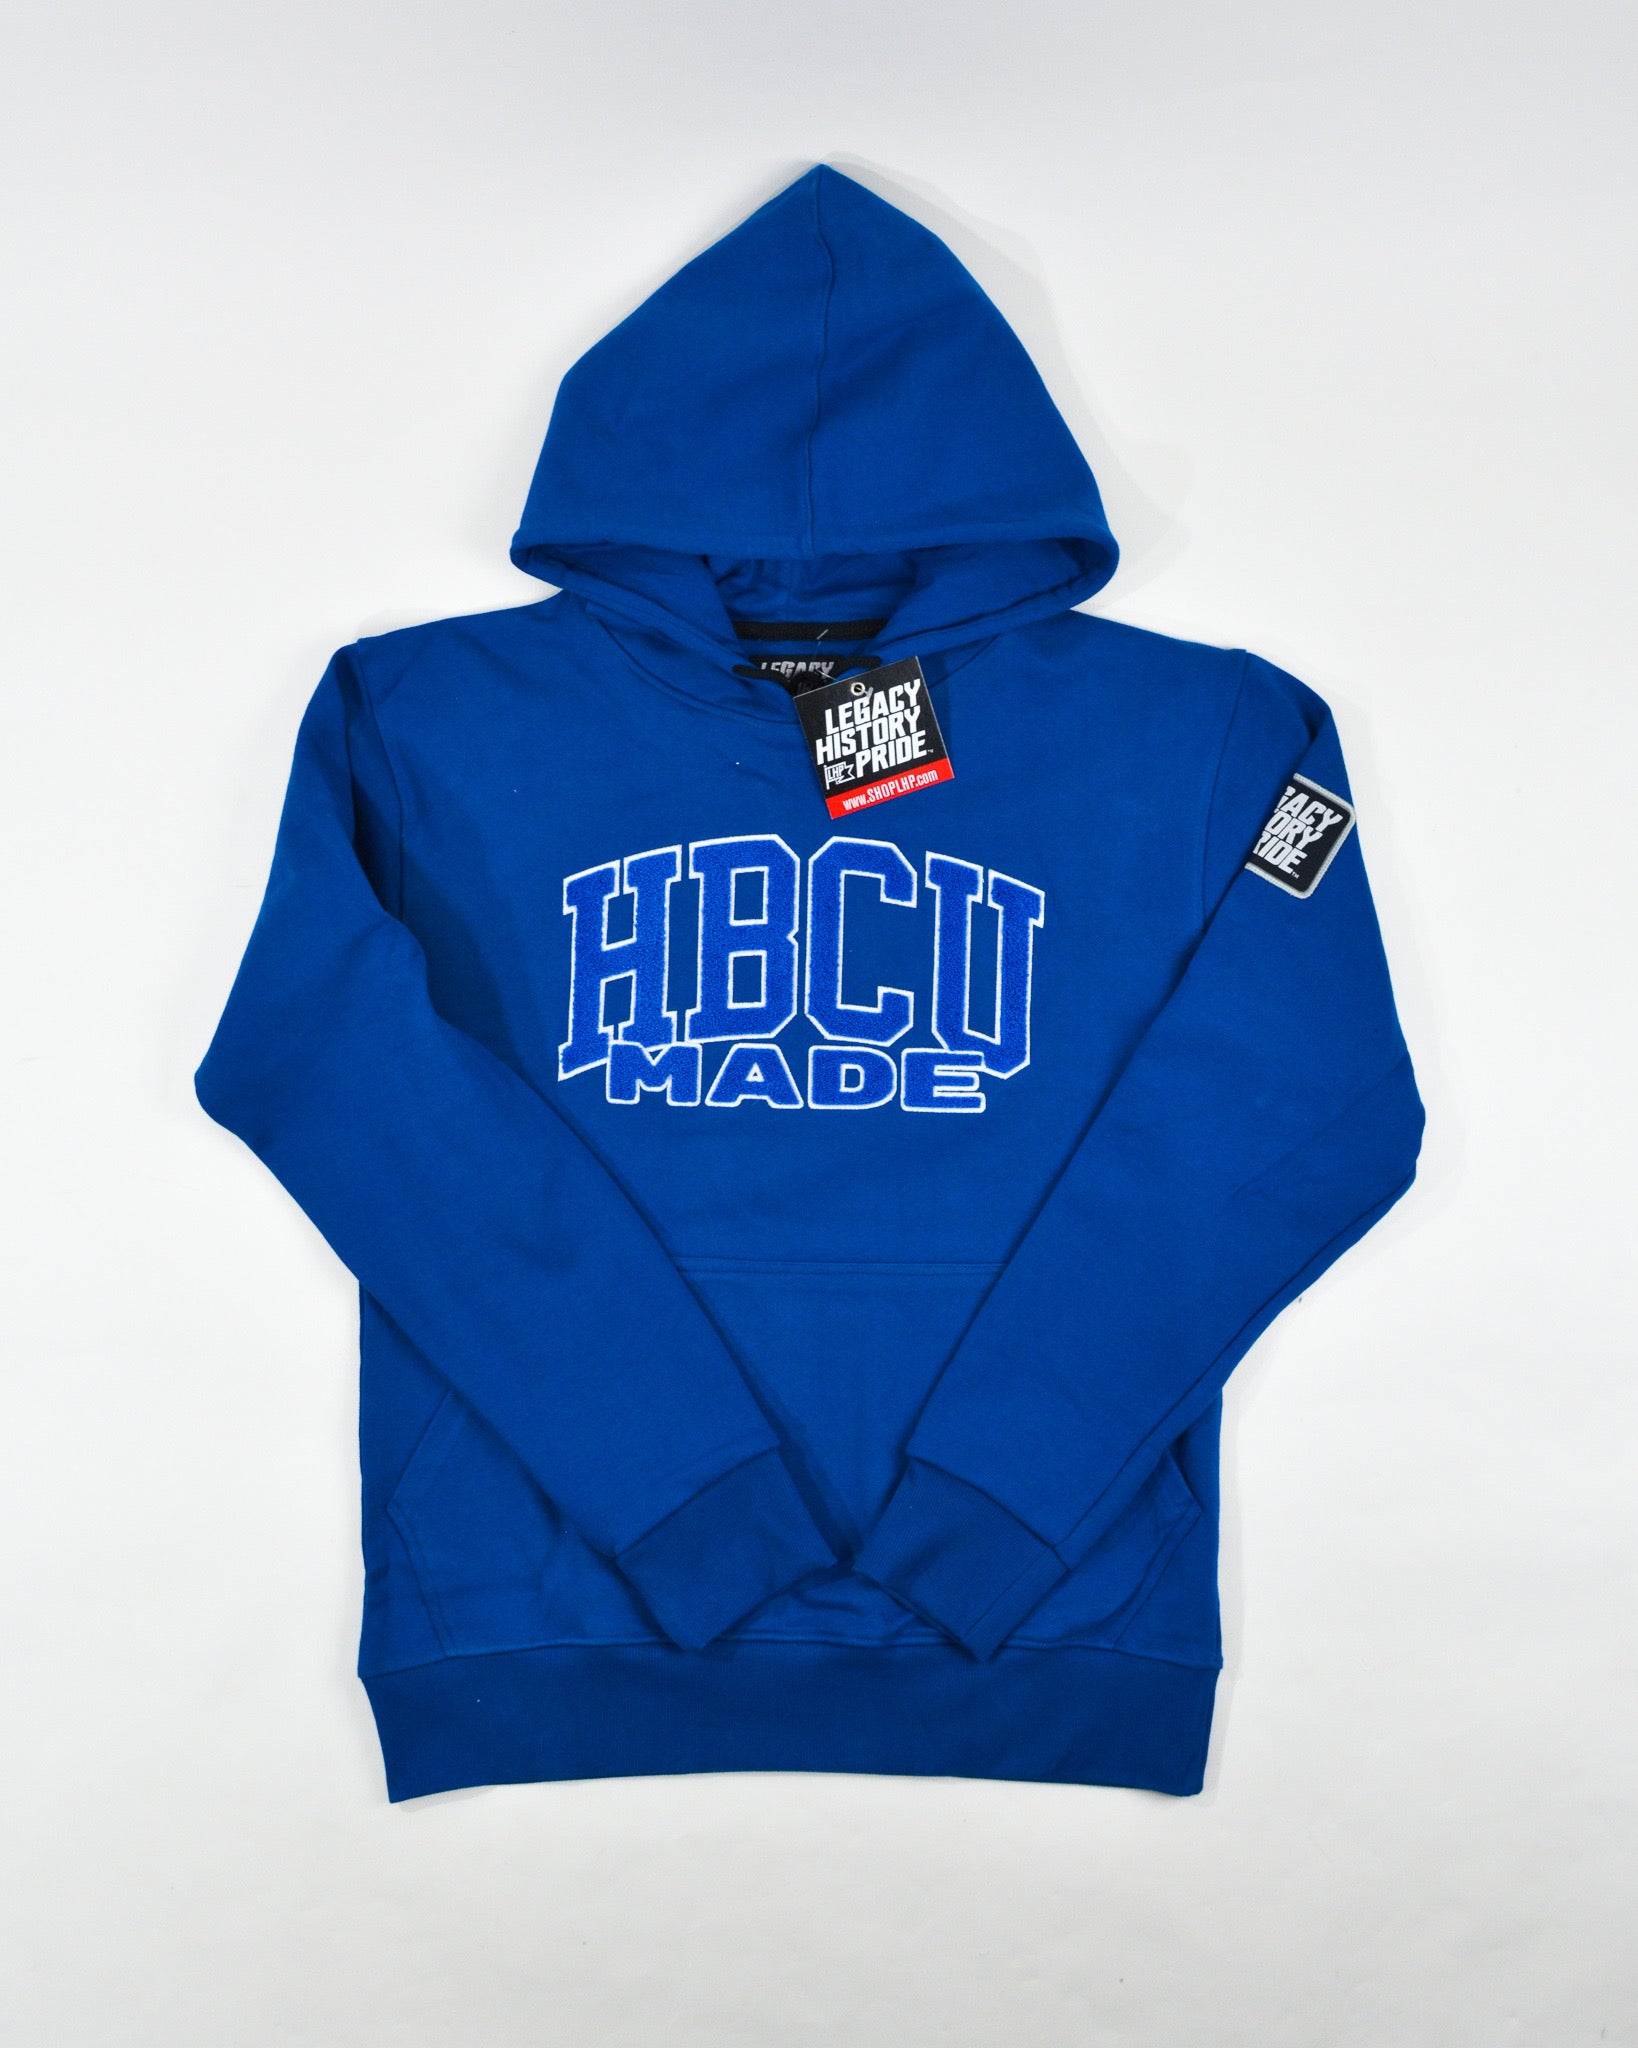 HBCU Sweatshirt Hoodies | Legacy History Pride